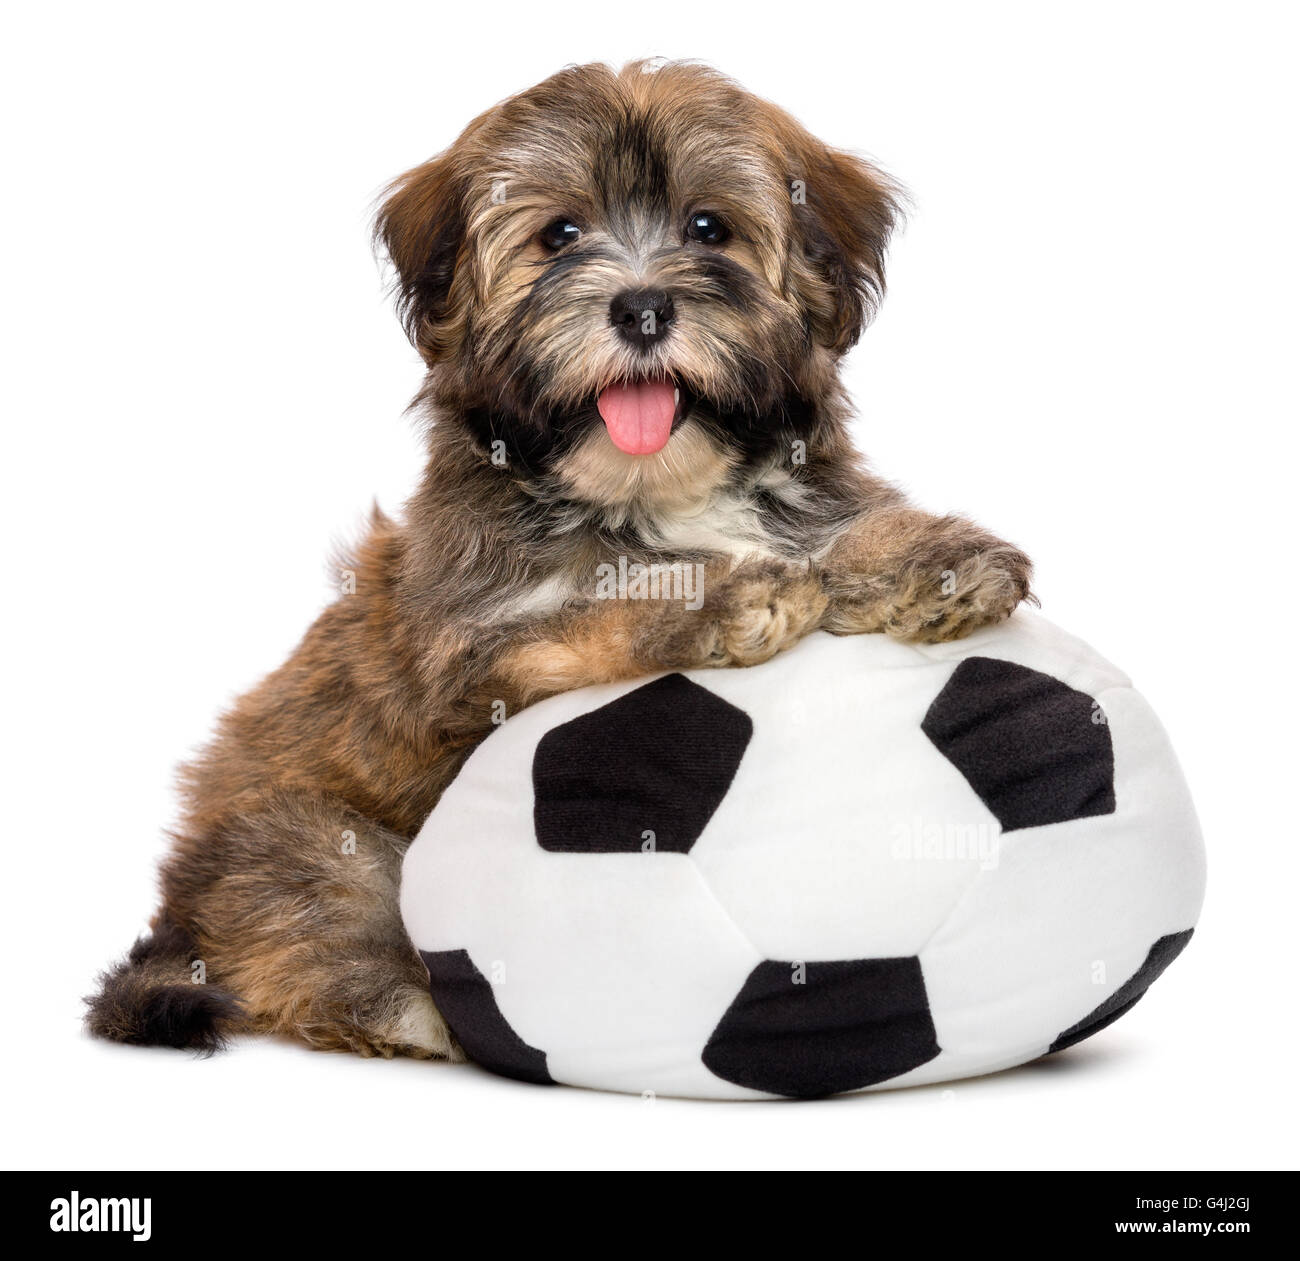 Niedlichen glücklich Havaneser Welpe Hund spielt mit einem Fußball Ball  Spielzeug Stockfotografie - Alamy